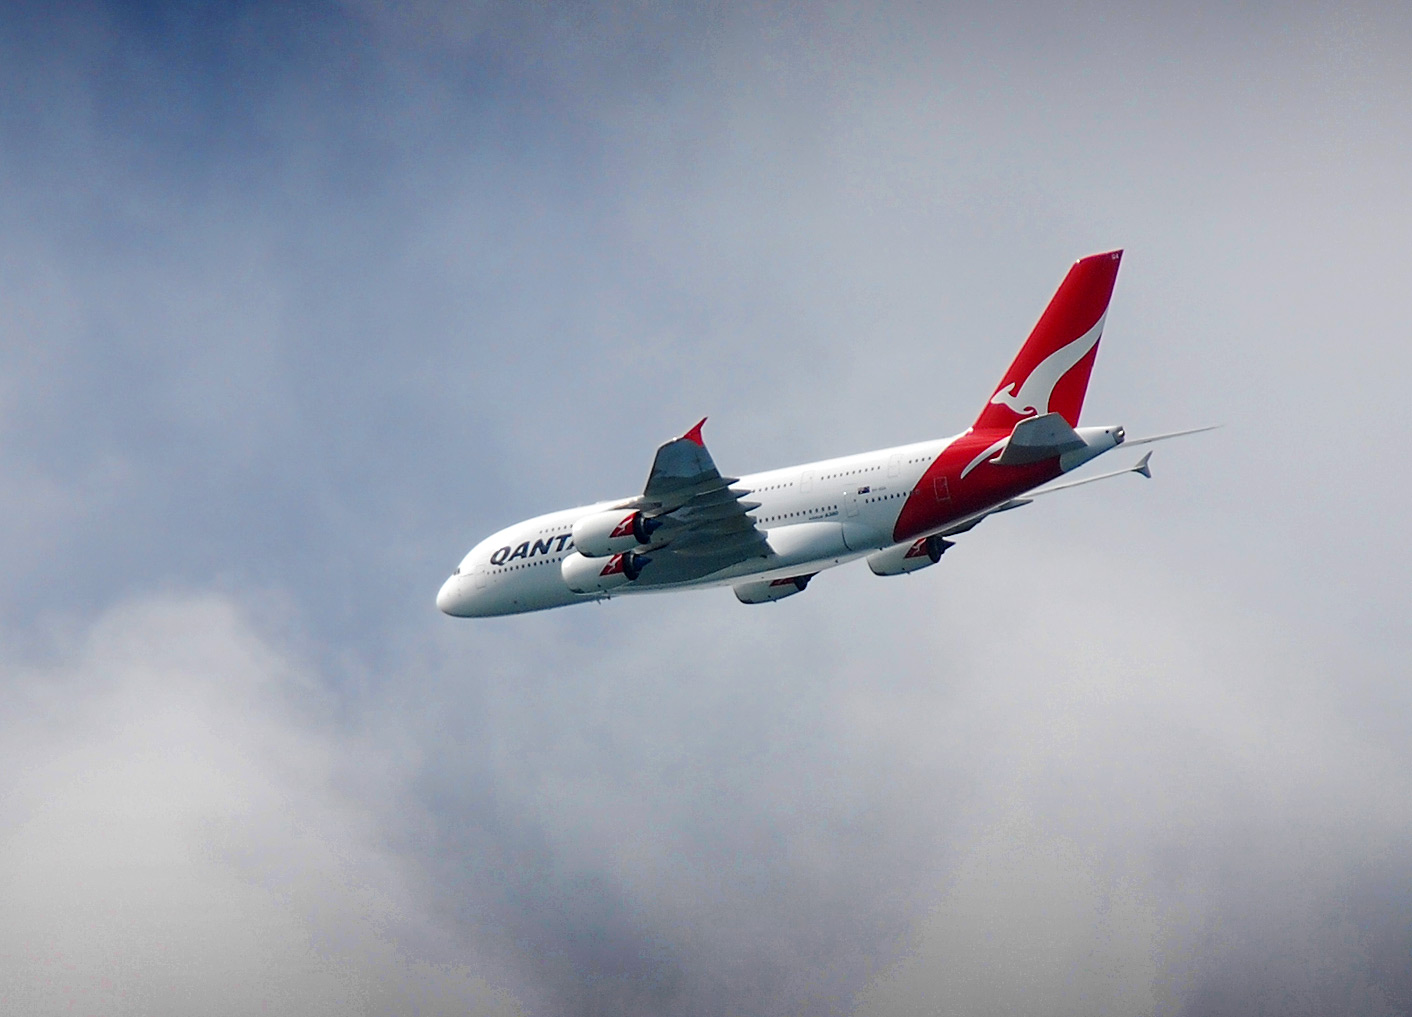 Qantas Airbus A380, Airbus, Aircraft, Airplane, Plane, HQ Photo